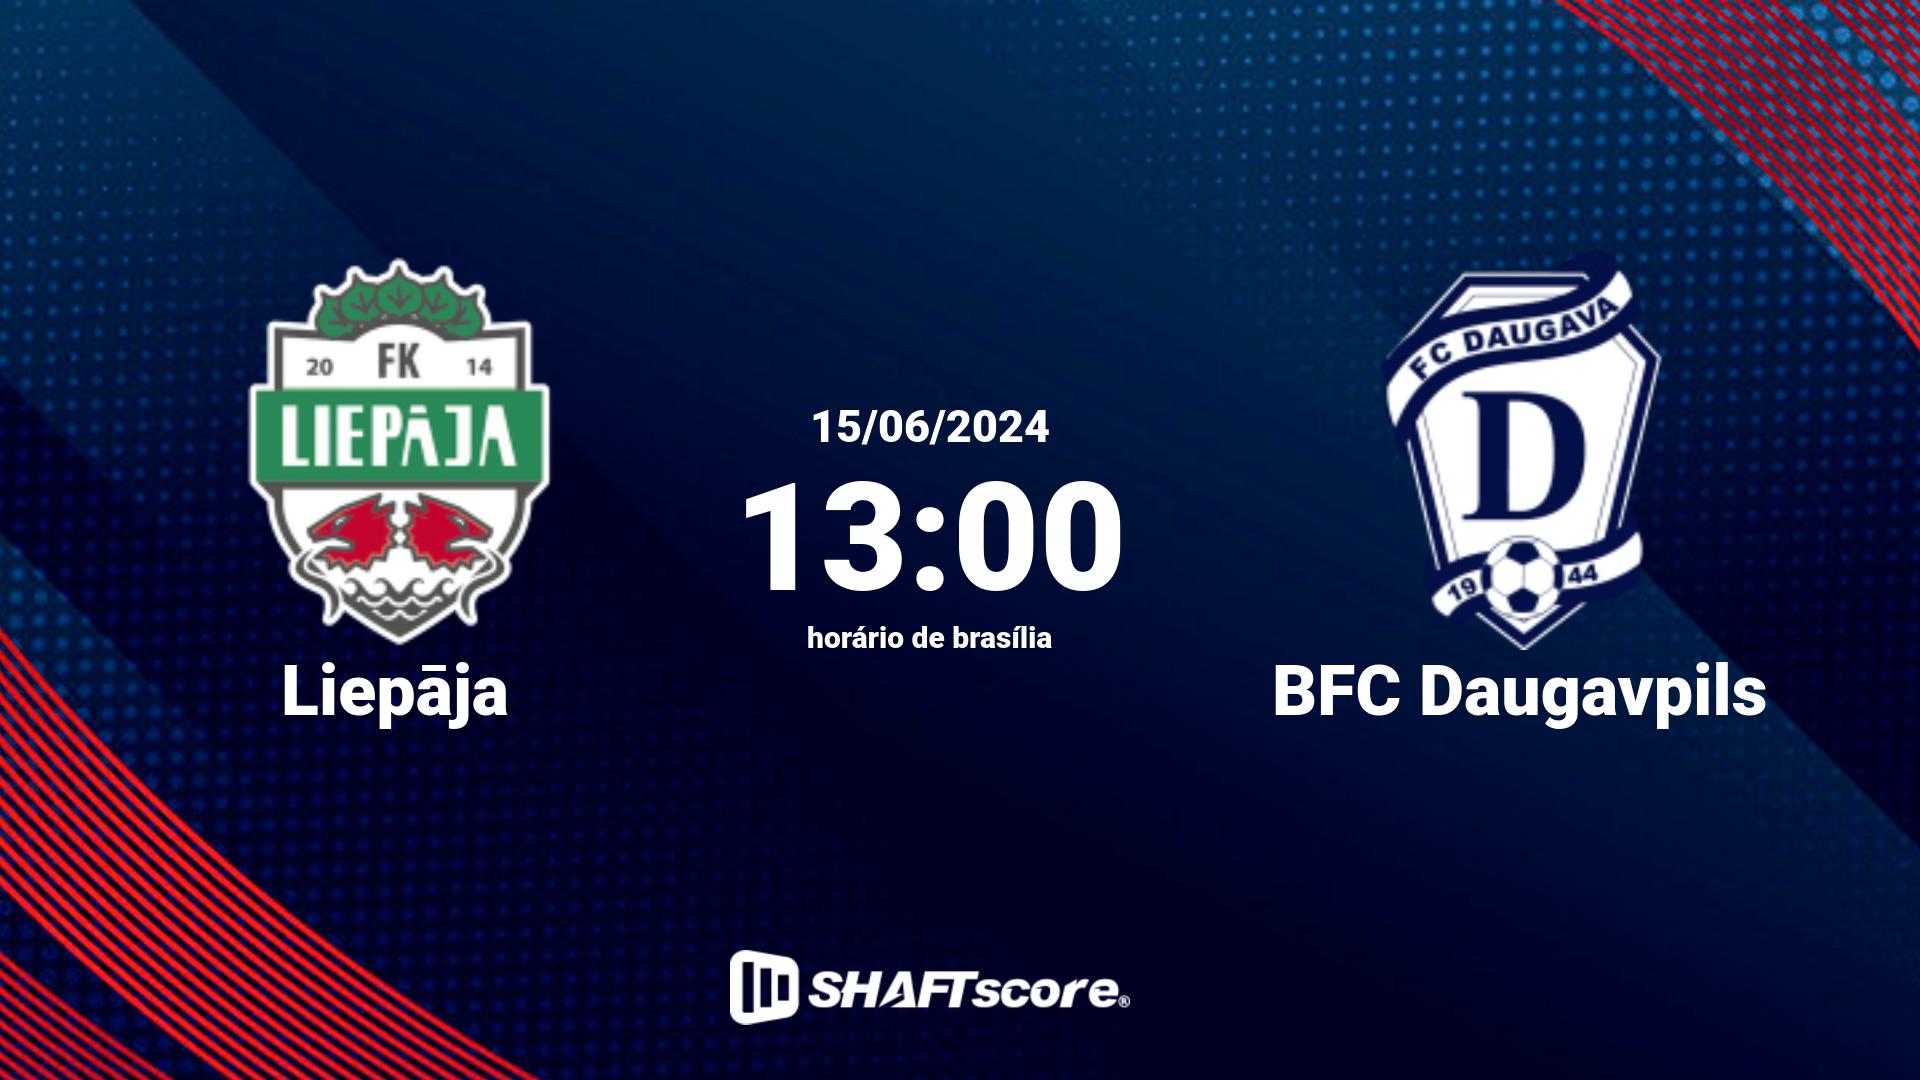 Estatísticas do jogo Liepāja vs BFC Daugavpils 15.06 13:00